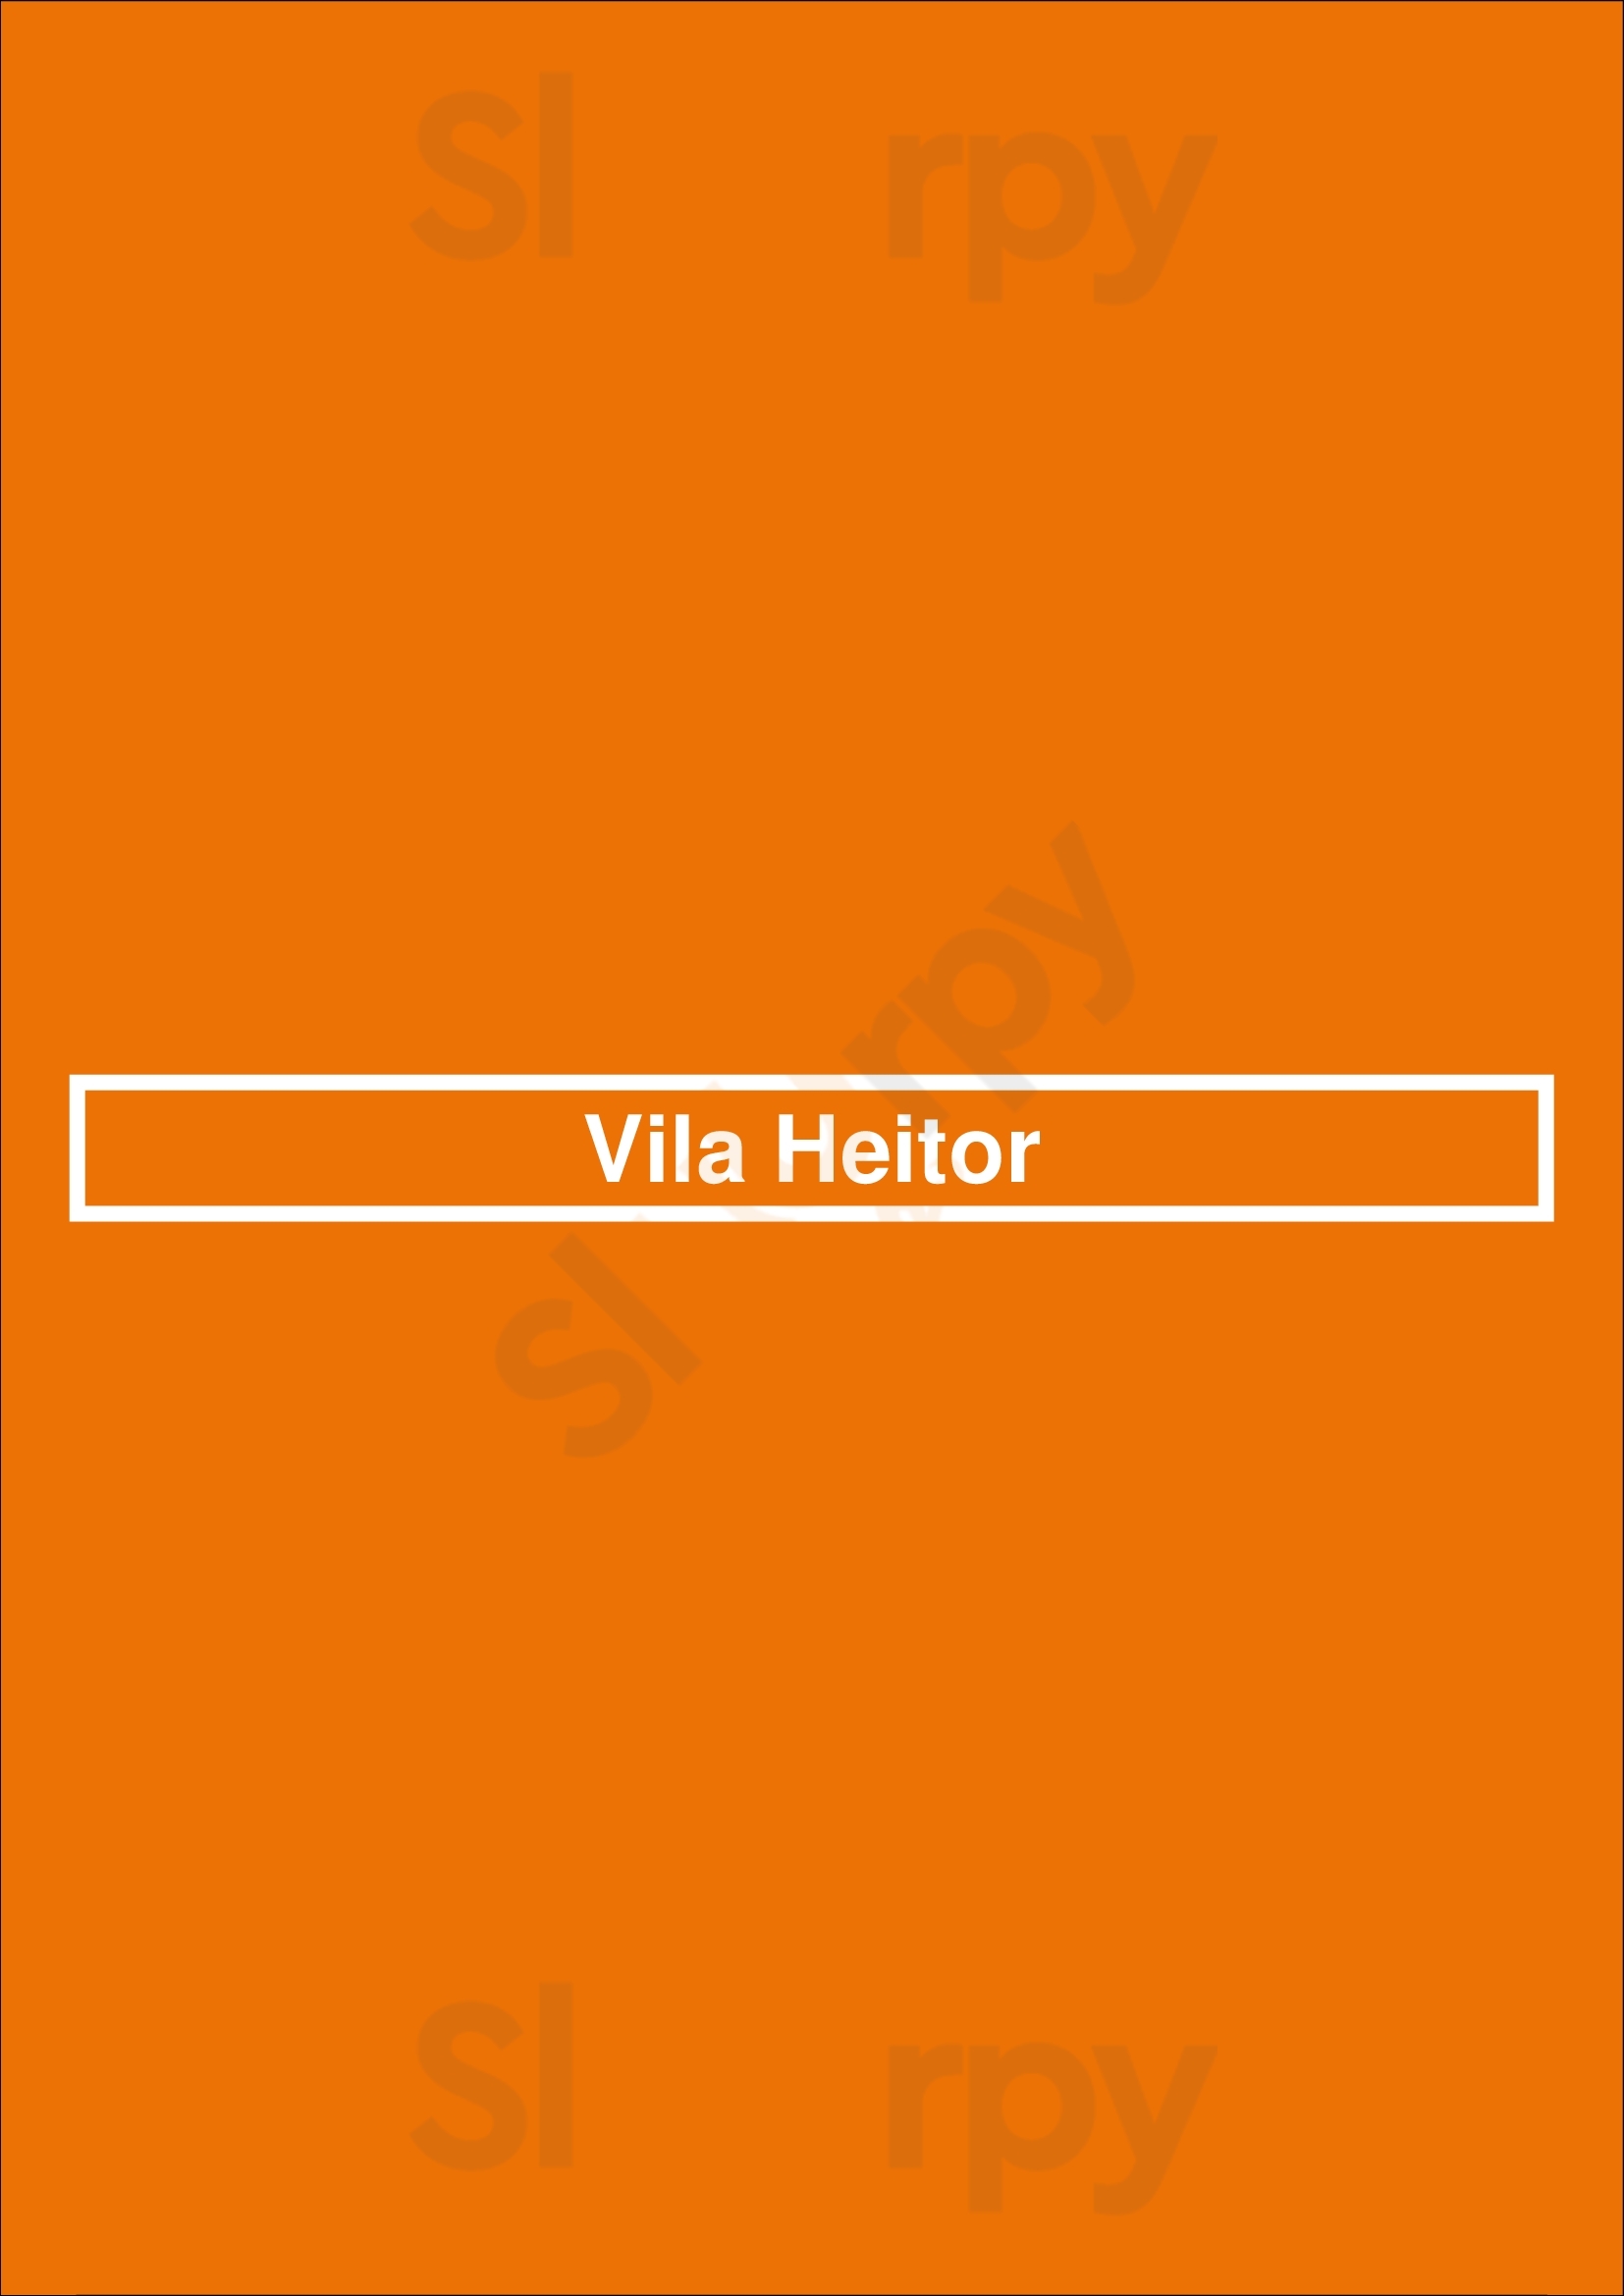 Vila Heitor São Paulo Menu - 1